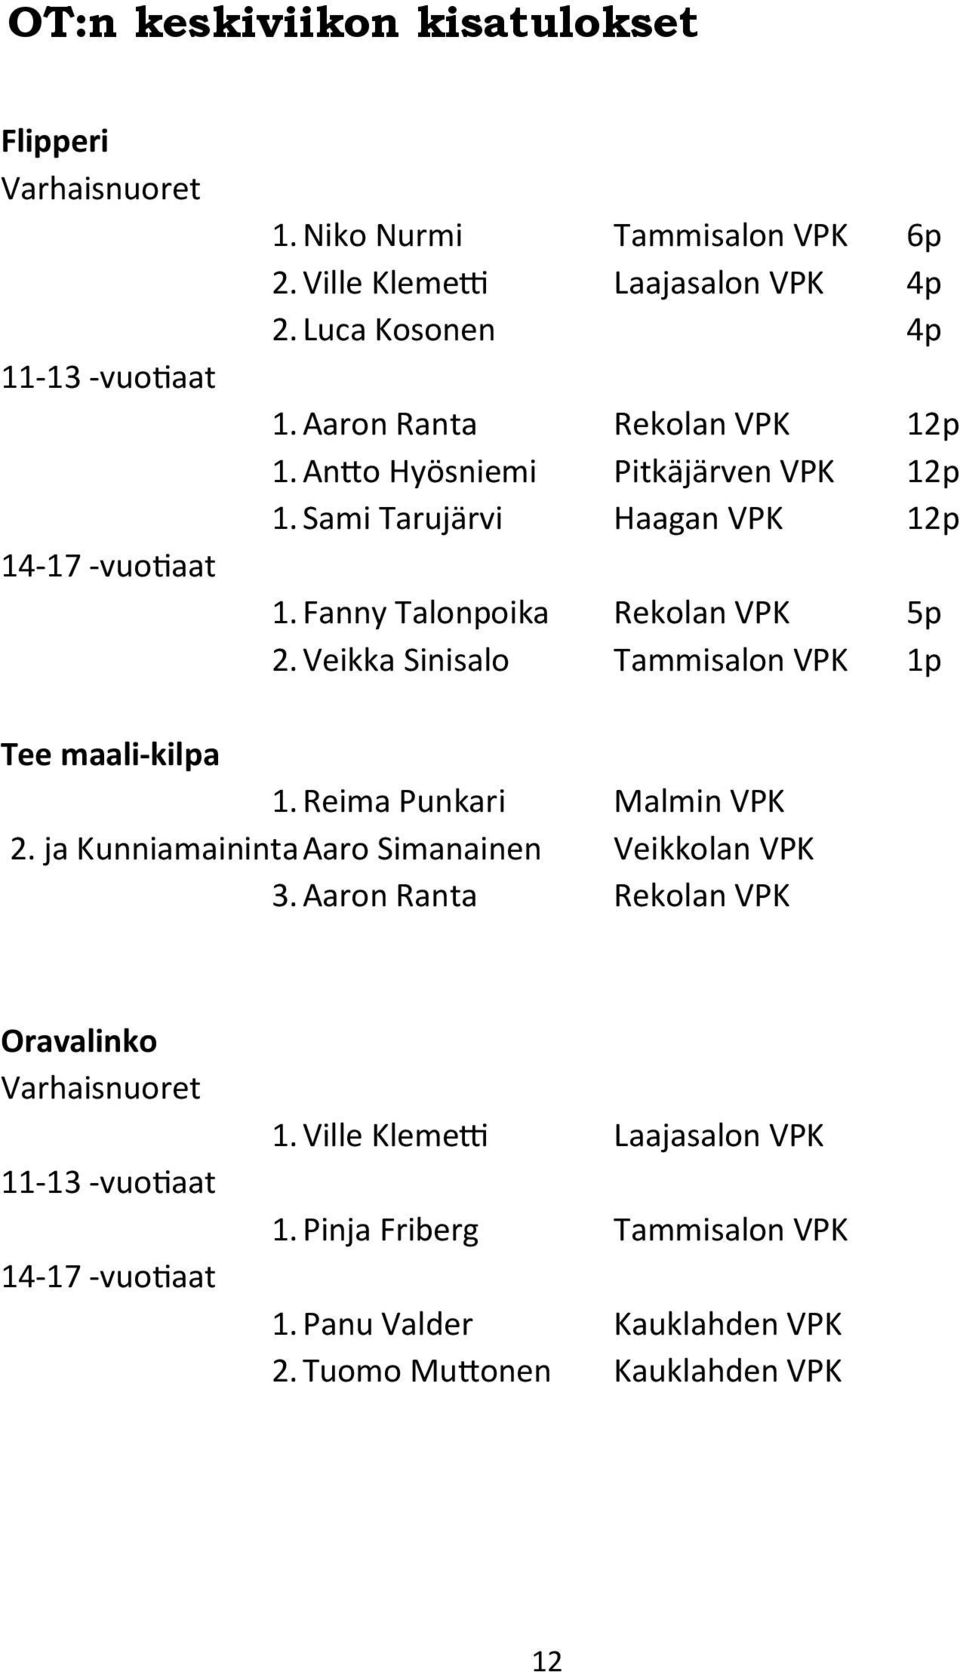 Veikka Sinisalo Tammisalon VPK 1p Tee maali-kilpa 1. Reima Punkari Malmin VPK 2. ja Kunniamaininta Aaro Simanainen Veikkolan VPK 3.